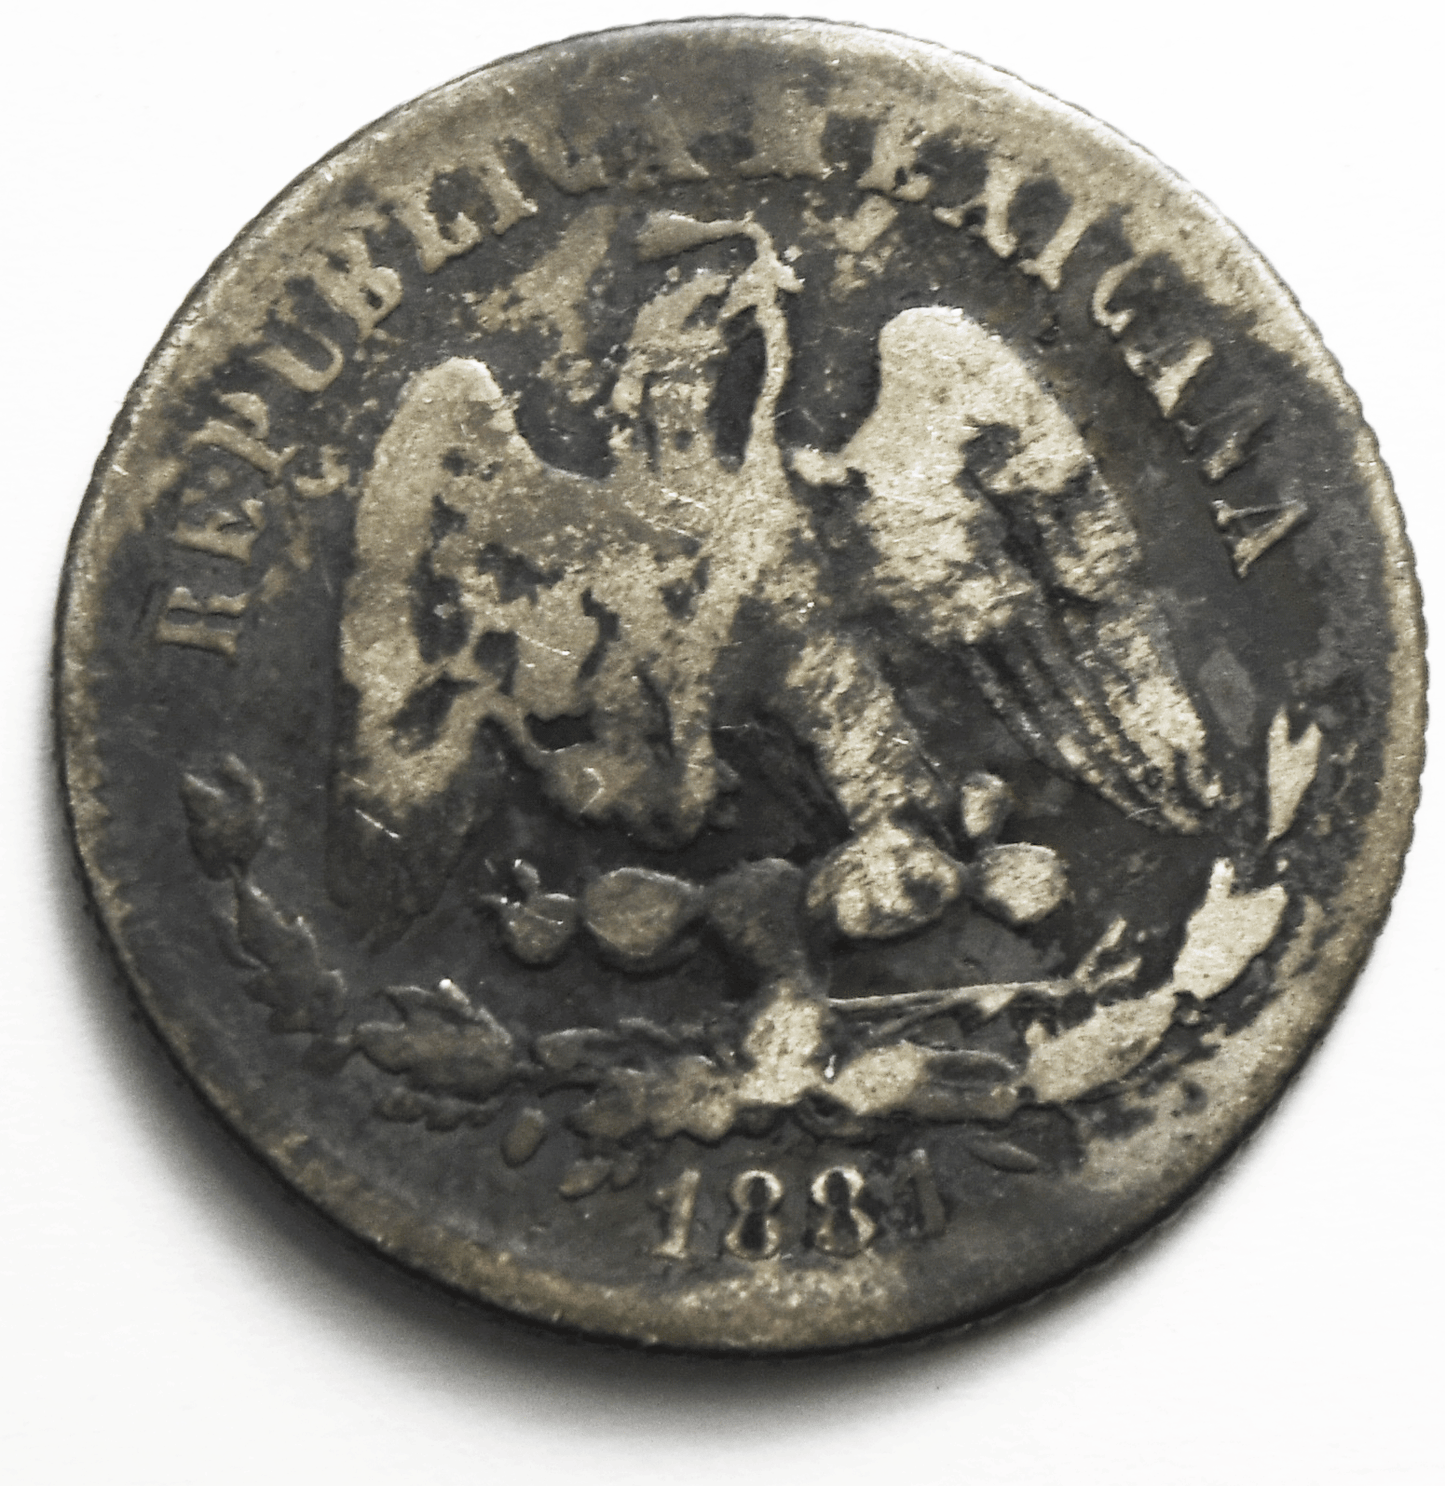 1881 Zs Mexico Second Republic 25 Centavos Silver Coin  KM# 406